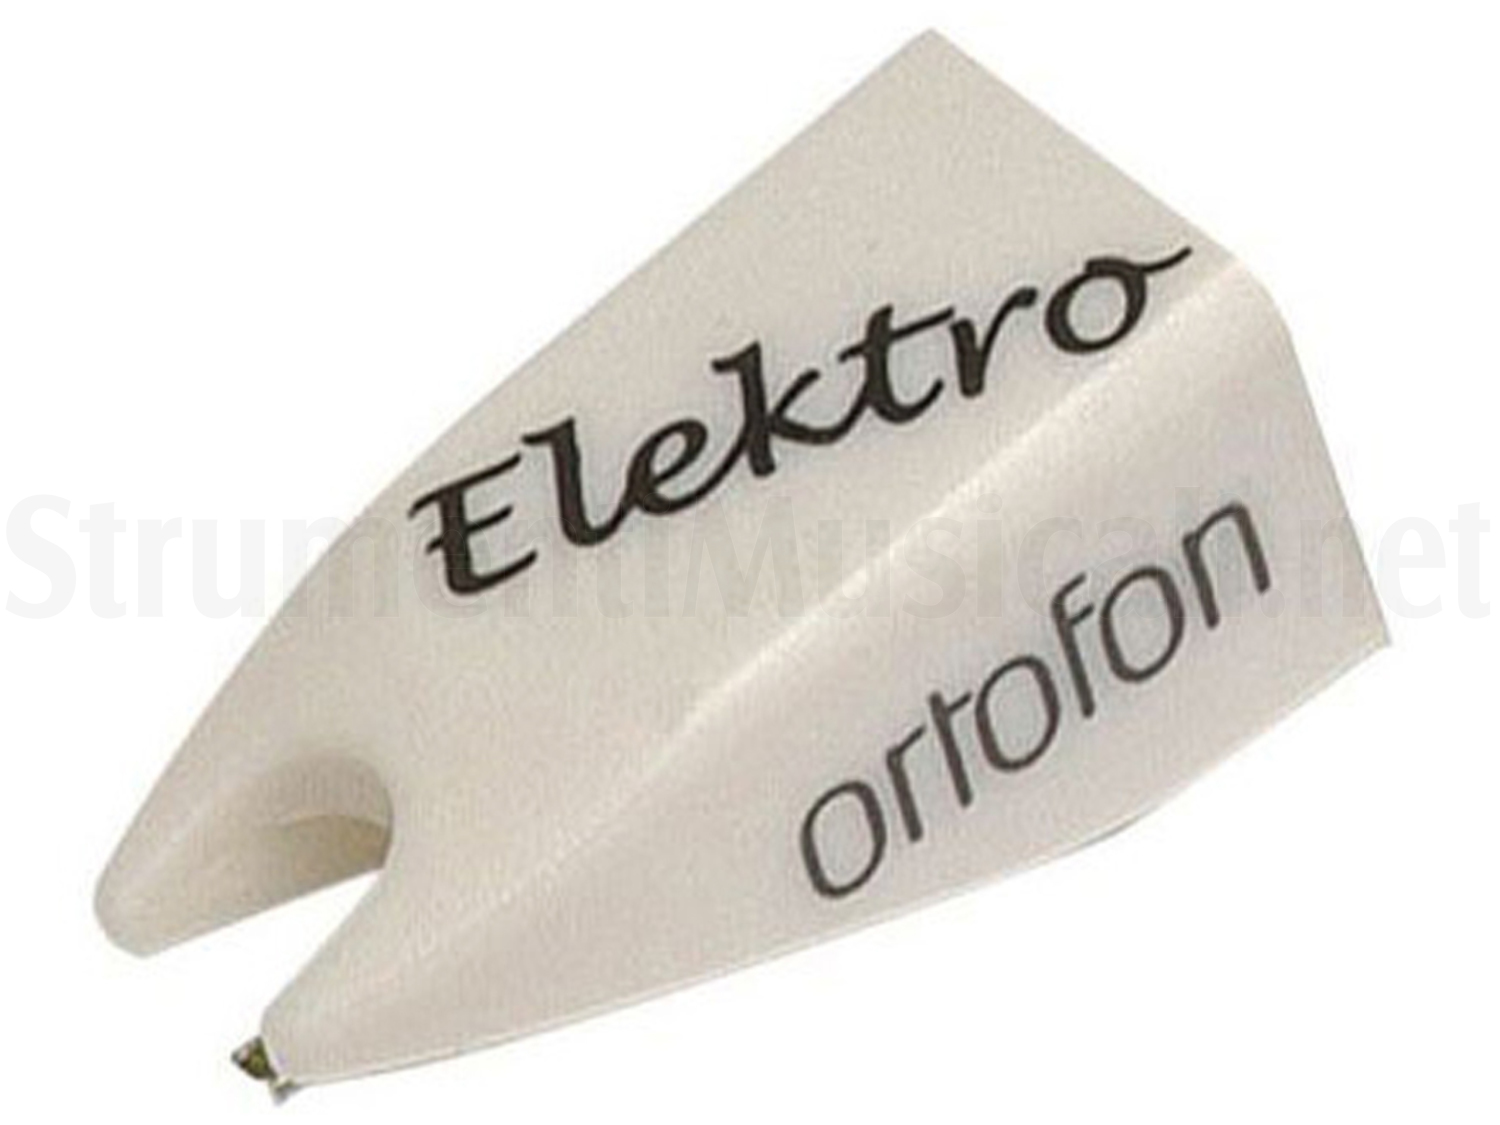 Ortofon stilo di ricambio per testina OM o Concorde Elektro